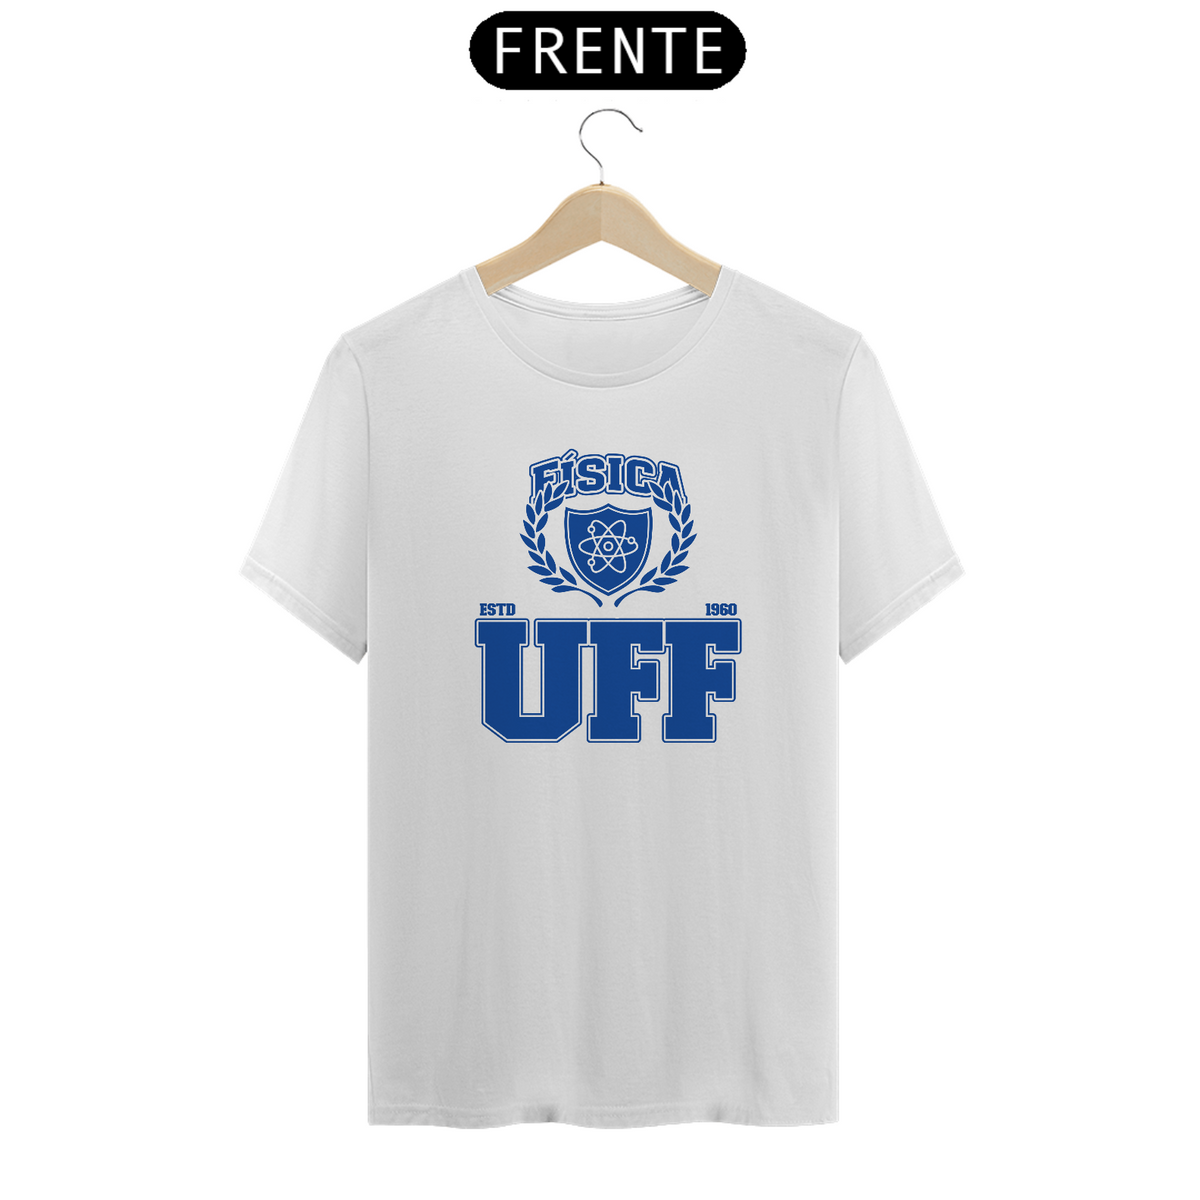 Nome do produto: UniVerso - Camisa Física UFF